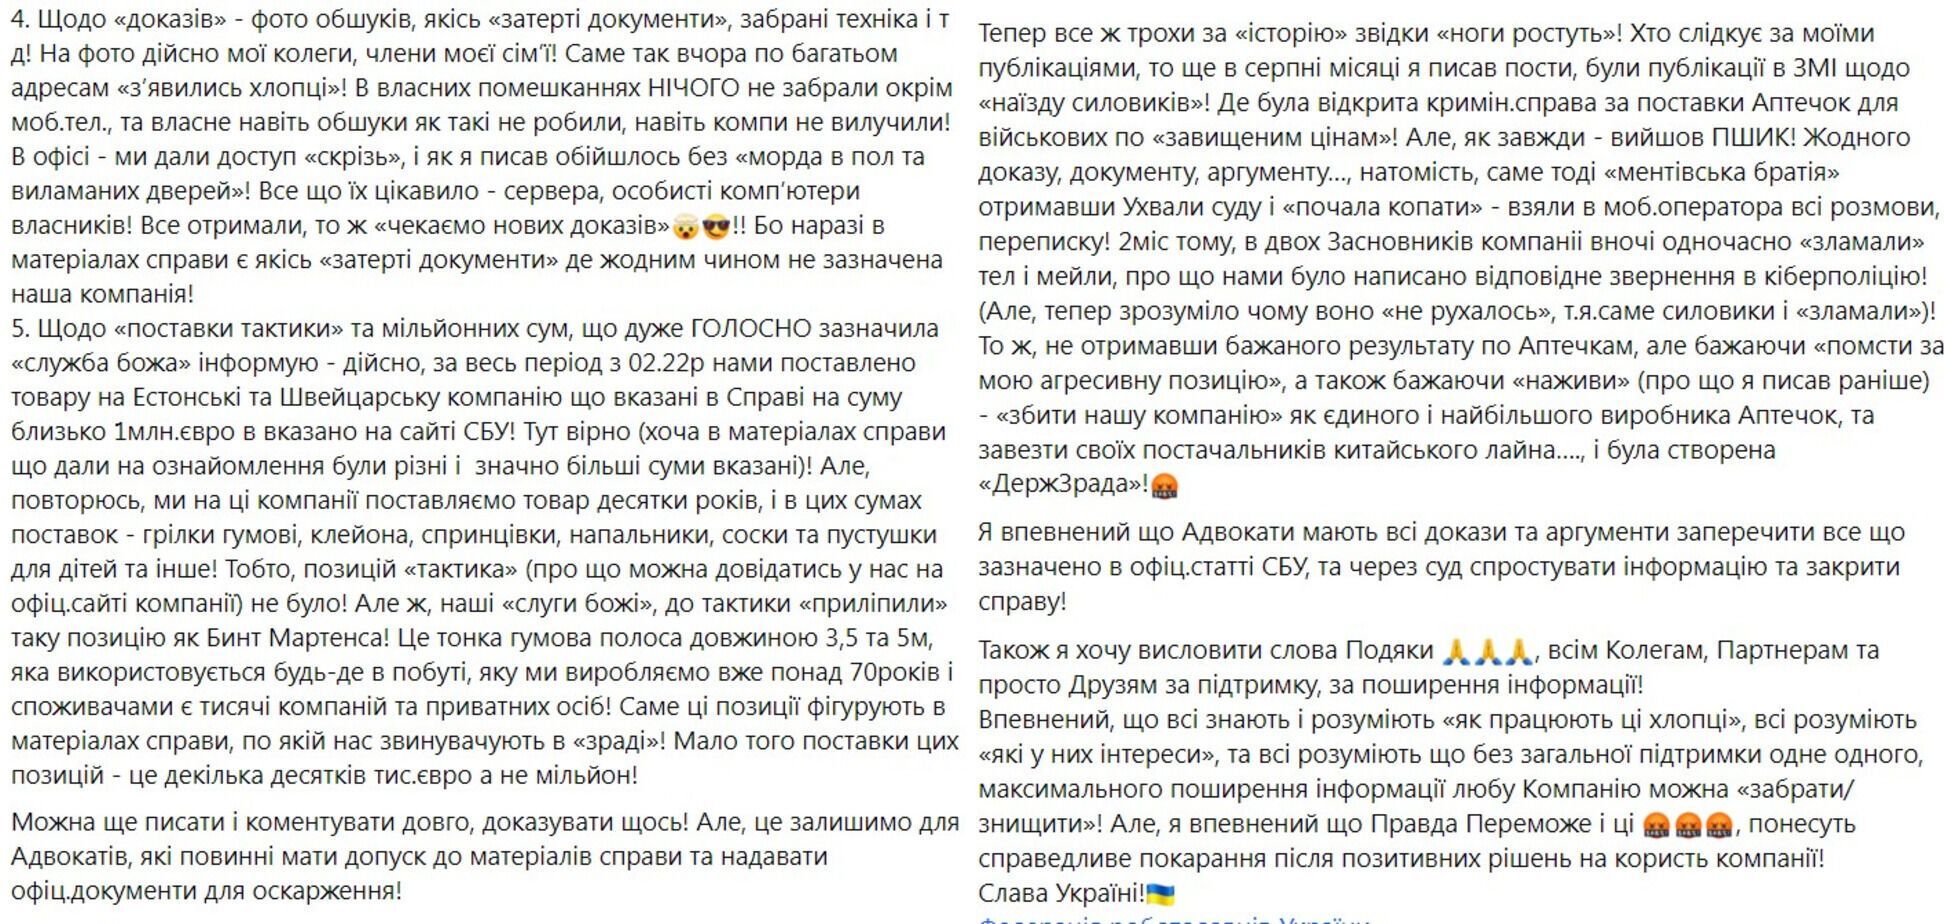 "Адвокати мають всі докази та аргументи": в "Київгумі" відкинули звинувачення у постачанні Росії засобів такмеду 